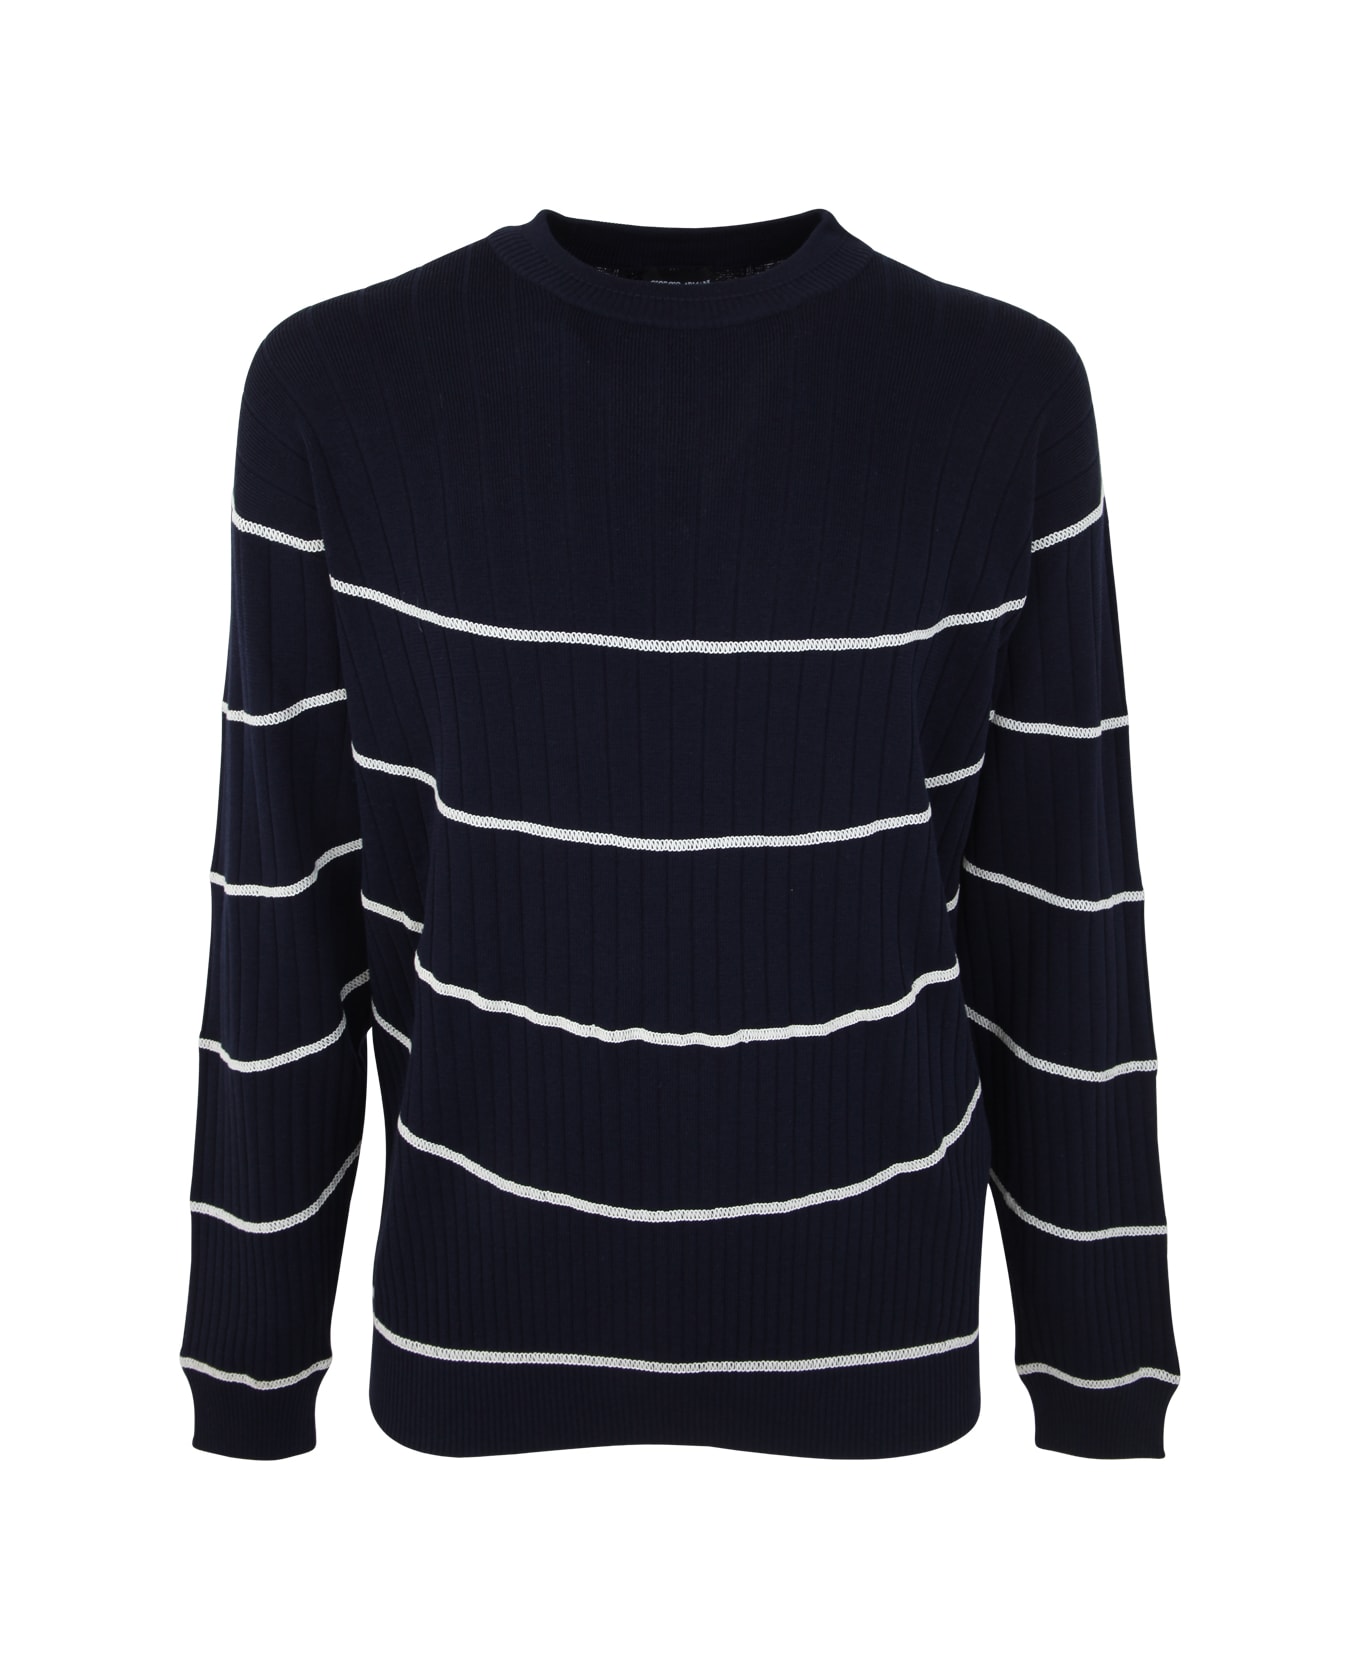 Giorgio Armani Striped Pullover - Ubwf Blue